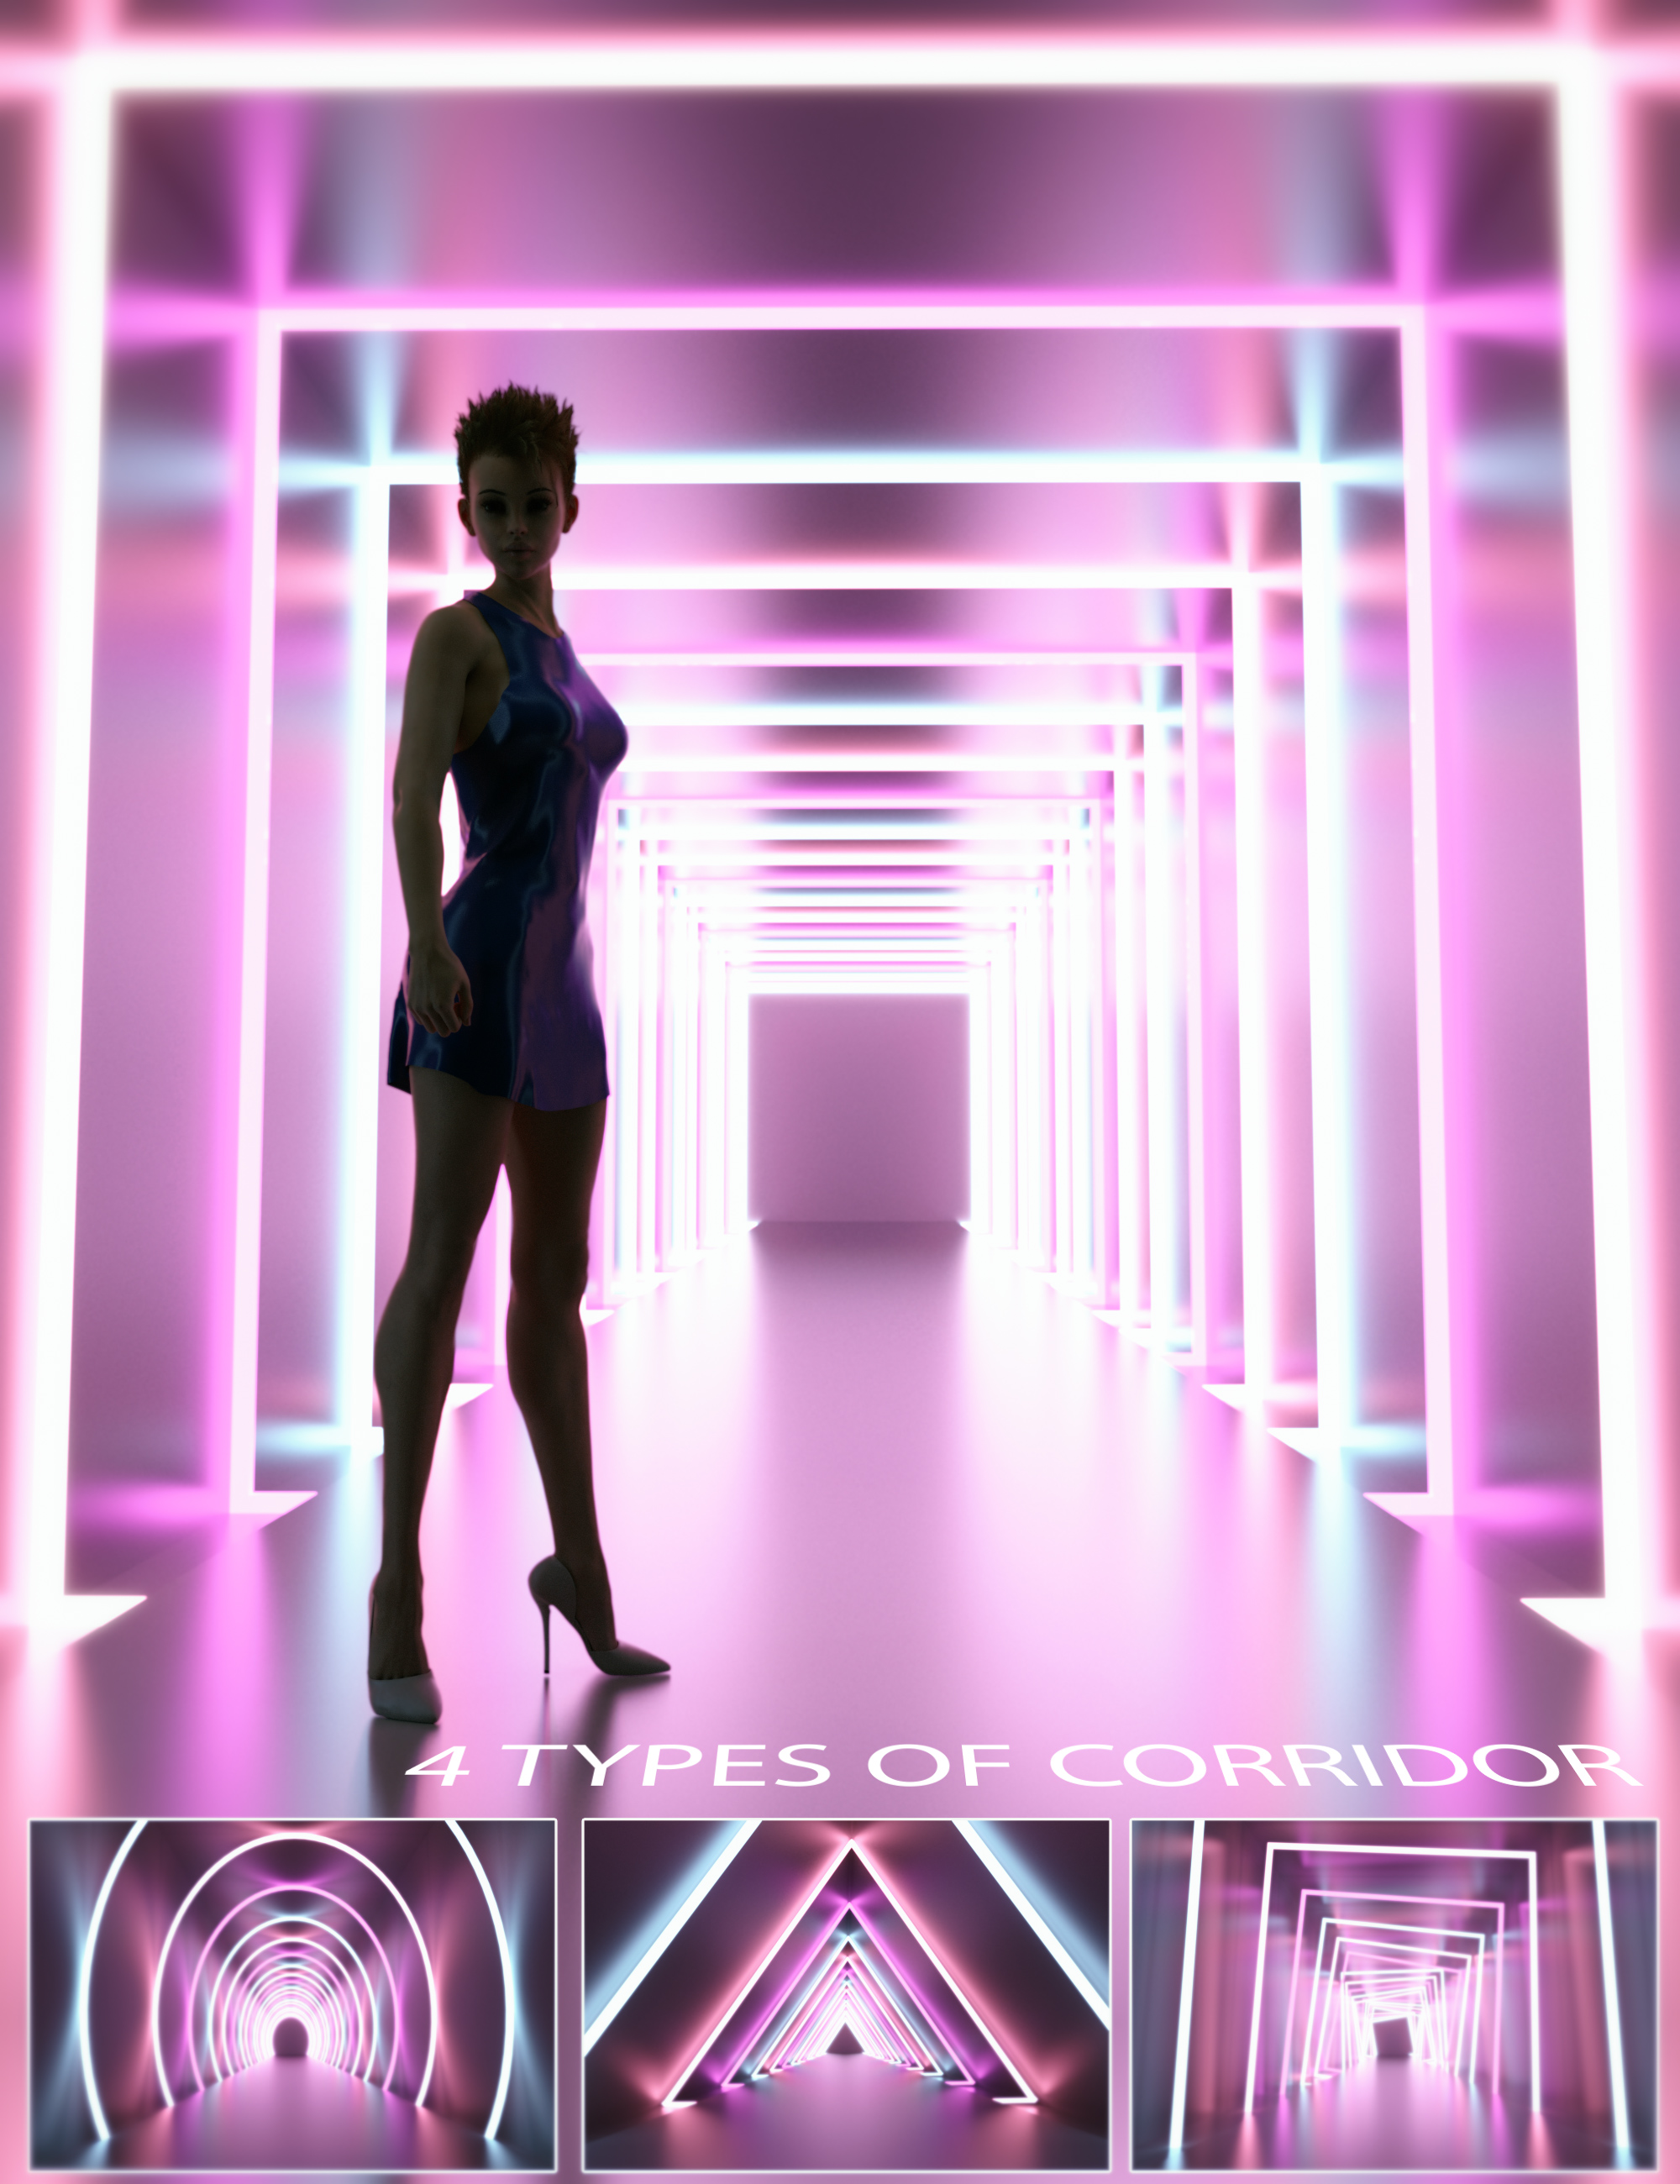 Neon Light Corridor by: Neikdian, 3D Models by Daz 3D